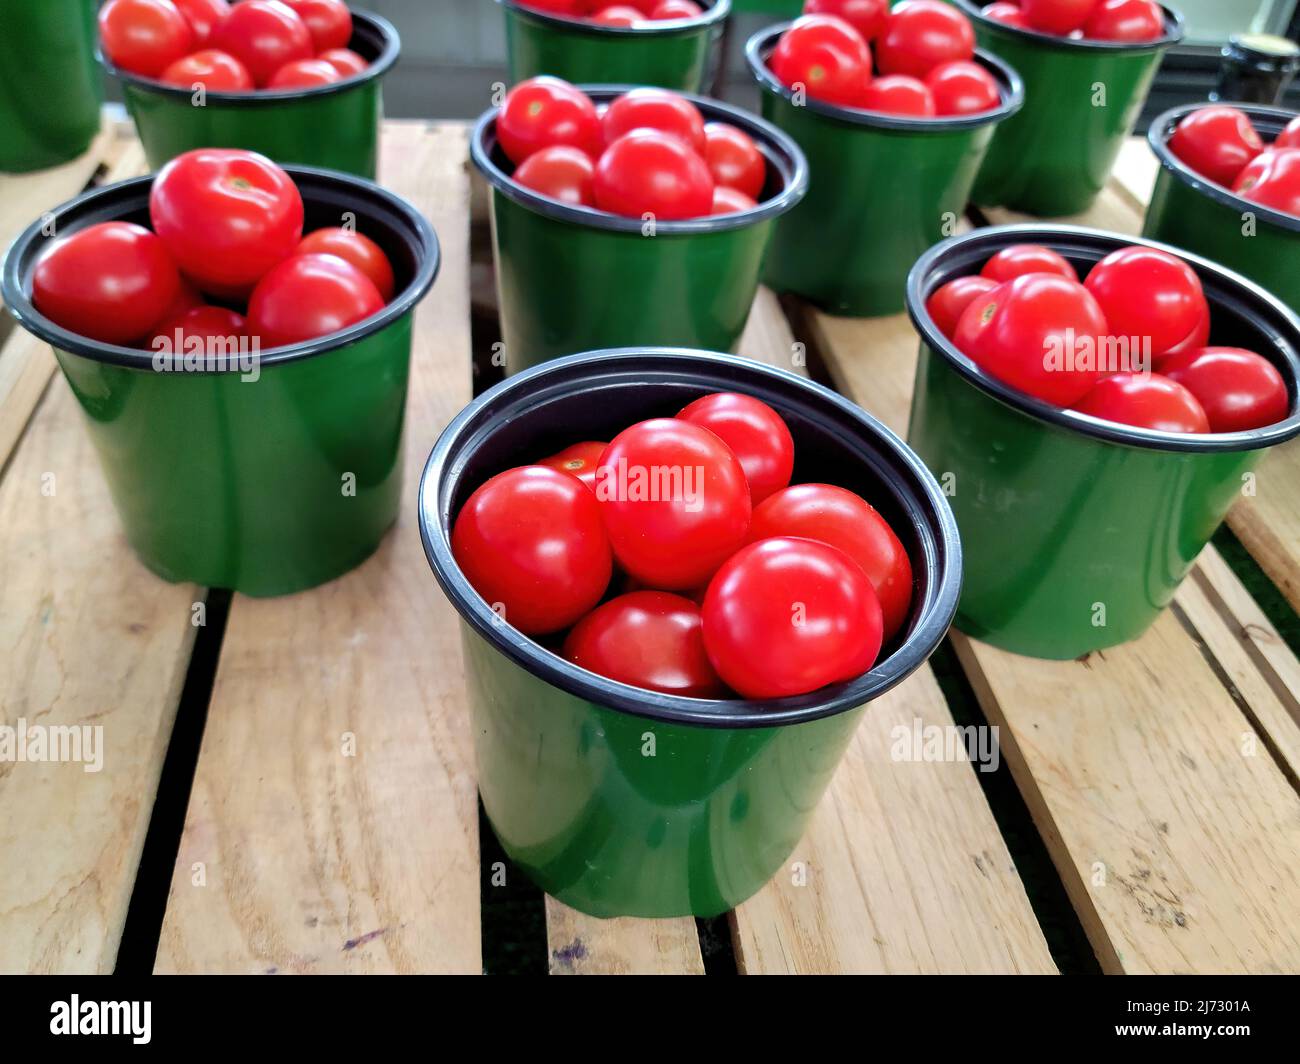 Tomates cherry rojos brillantes en envases verdes en el mercado Foto de stock